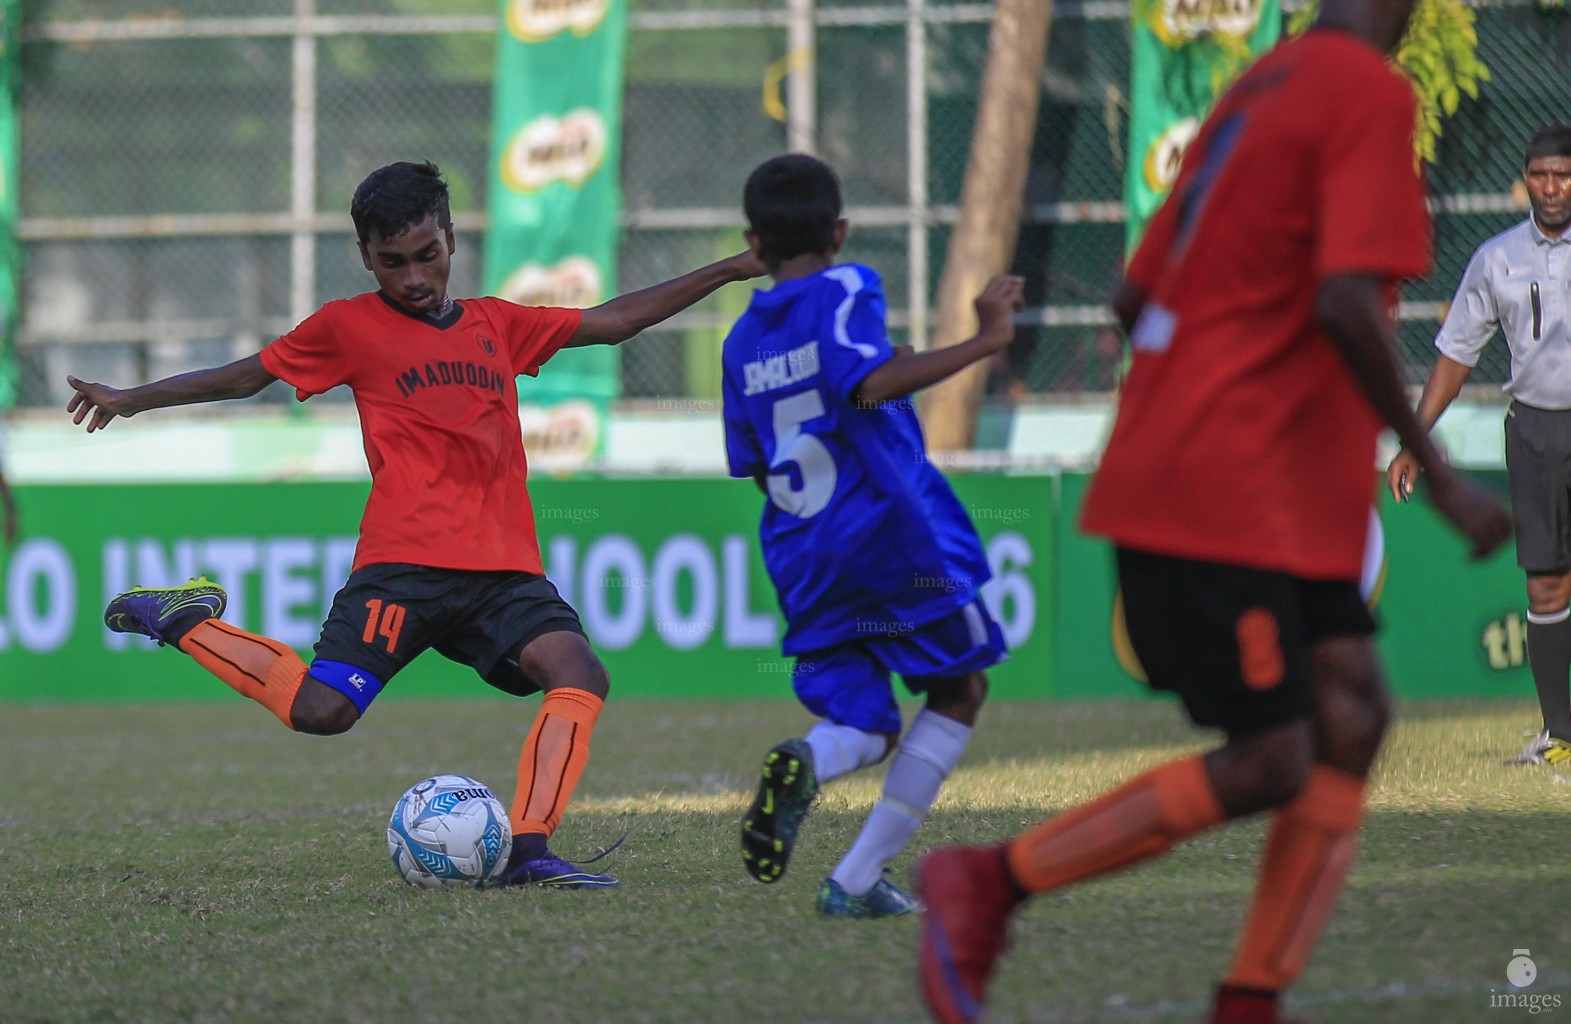 Interschool Football U14: Jamaaludheen vs Imaduddin , Friday, March 4, 2016. (Images.mv Photo: Mohamed Ahsan)